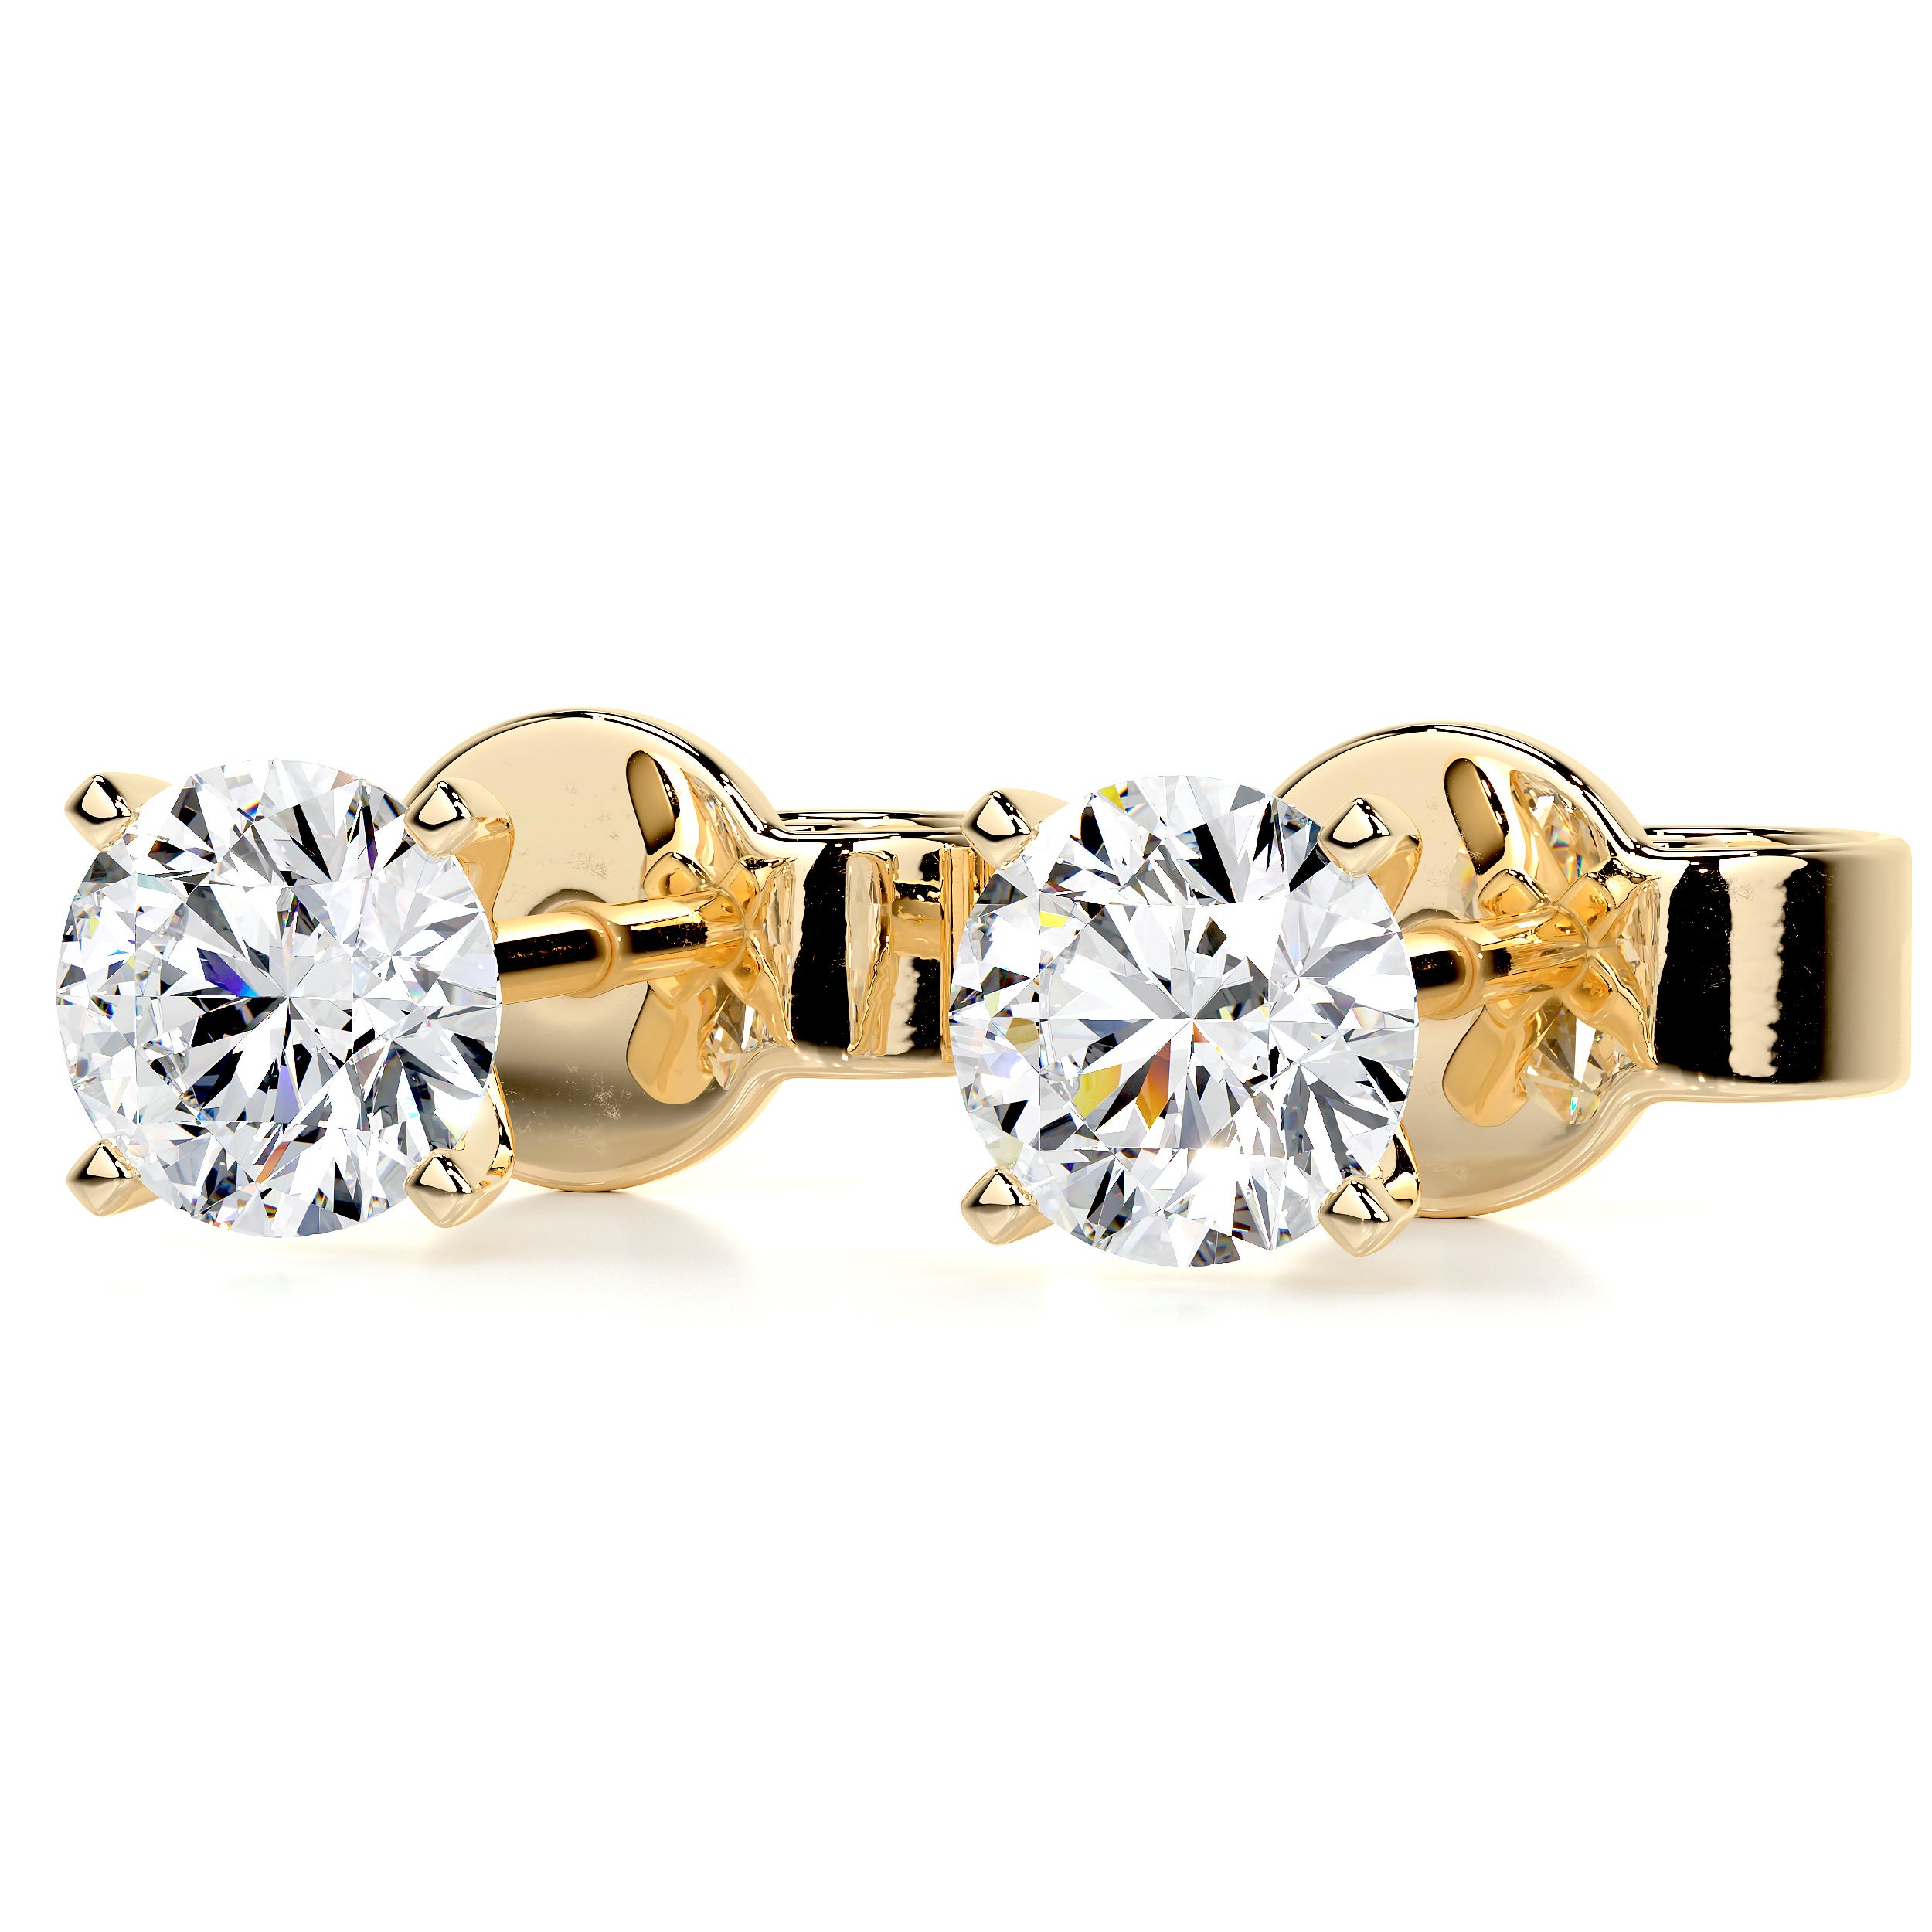 Allen Lab Grown Diamond Earrings   (2 Carat) -18K Yellow Gold